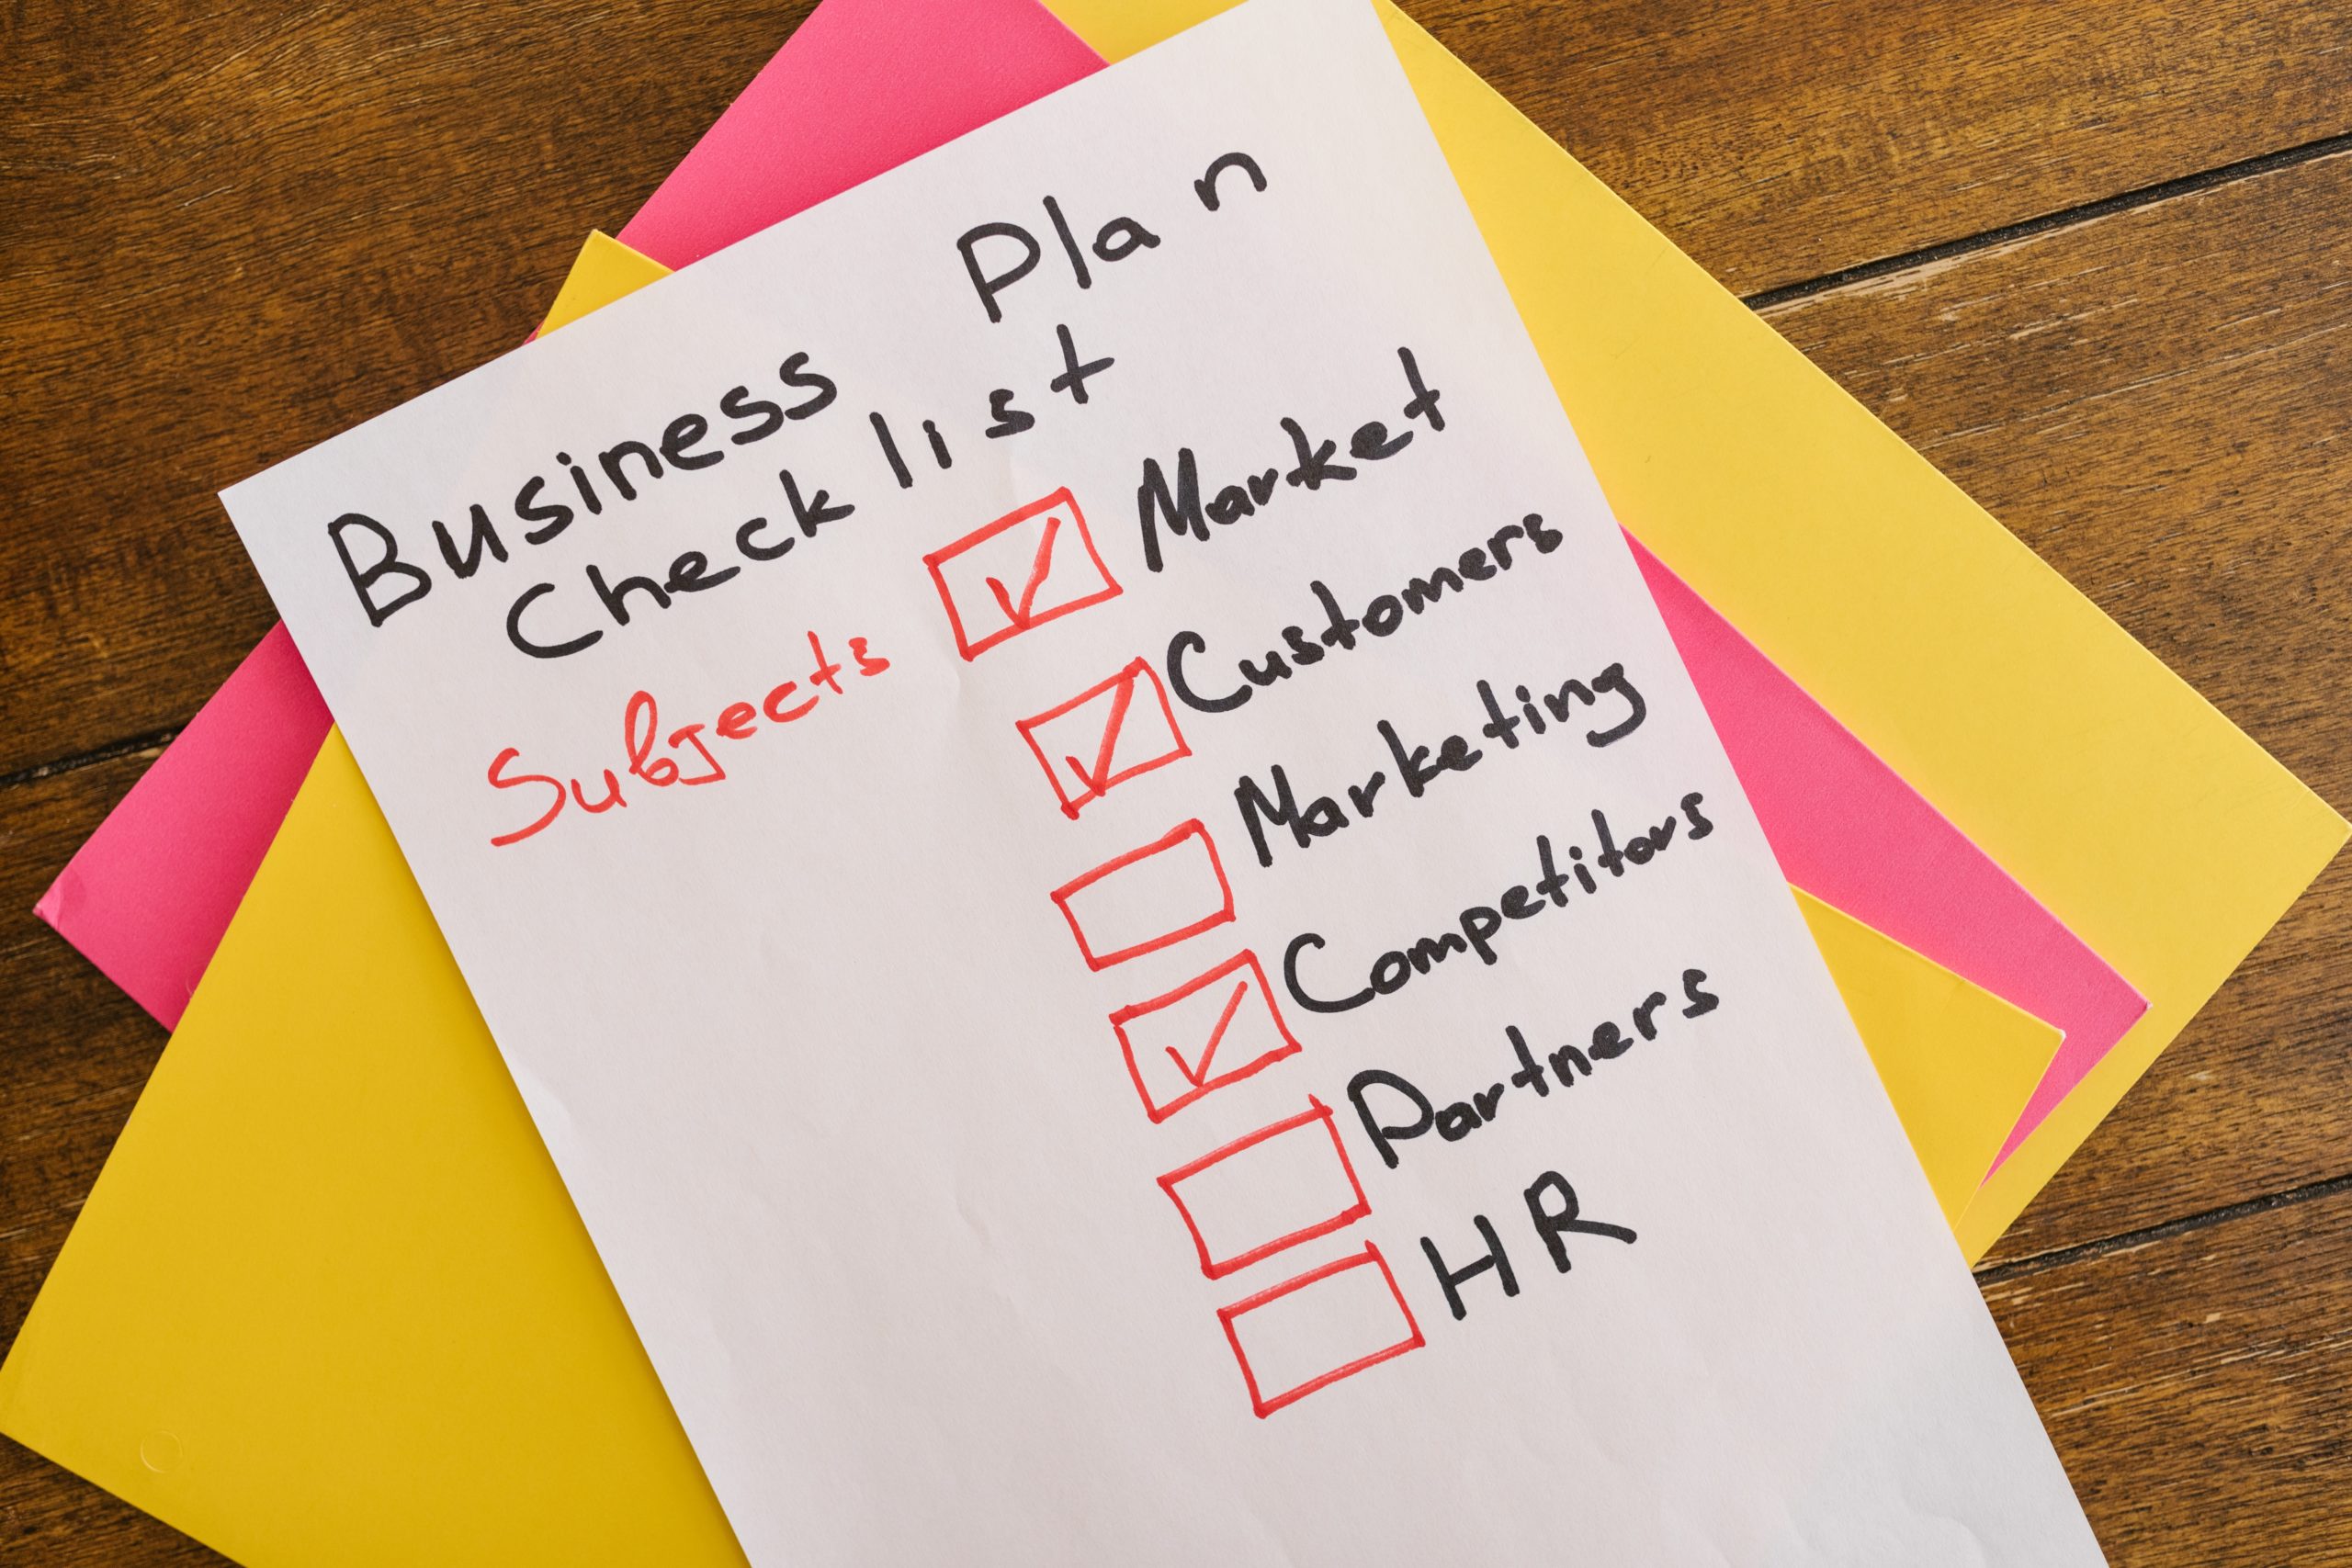 Business plan checklist written on paper